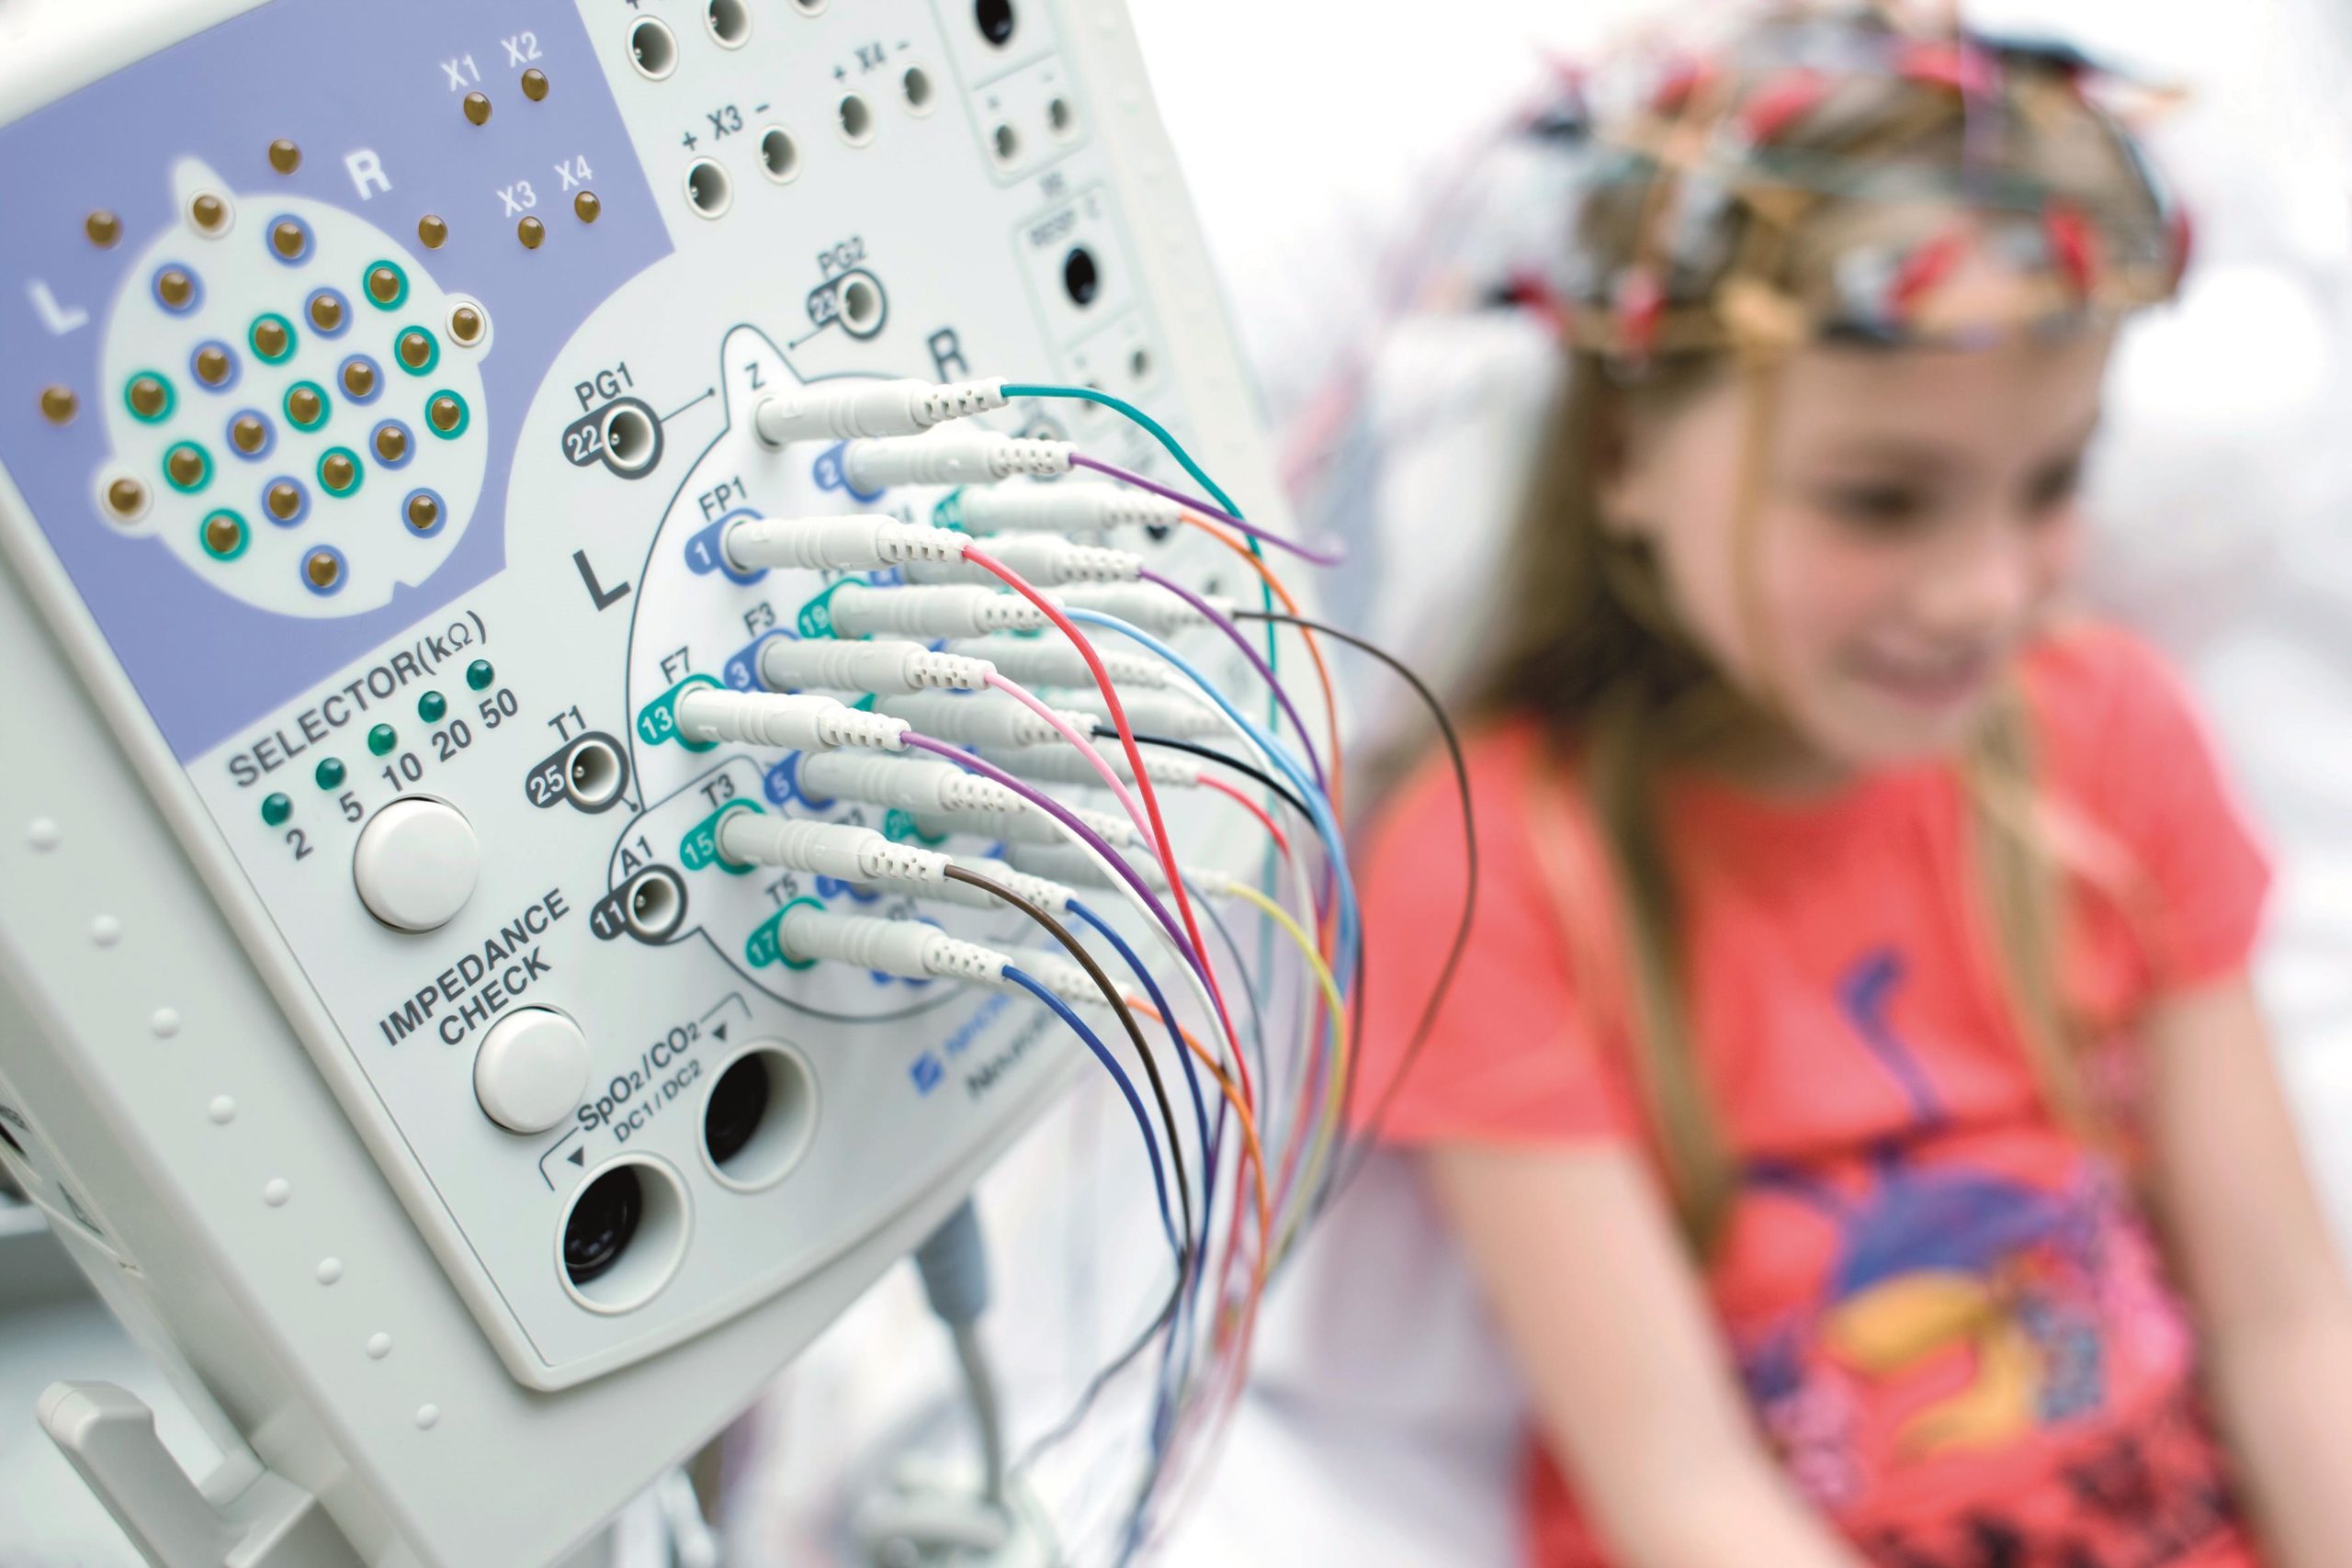 Ээг мониторирование. Электроэнцефалография (ЭЭГ). Энцефалография (ЭЭГ). ЭЭГ мониторинг головного мозга. ЭЭГ мониторинг сна у детей.